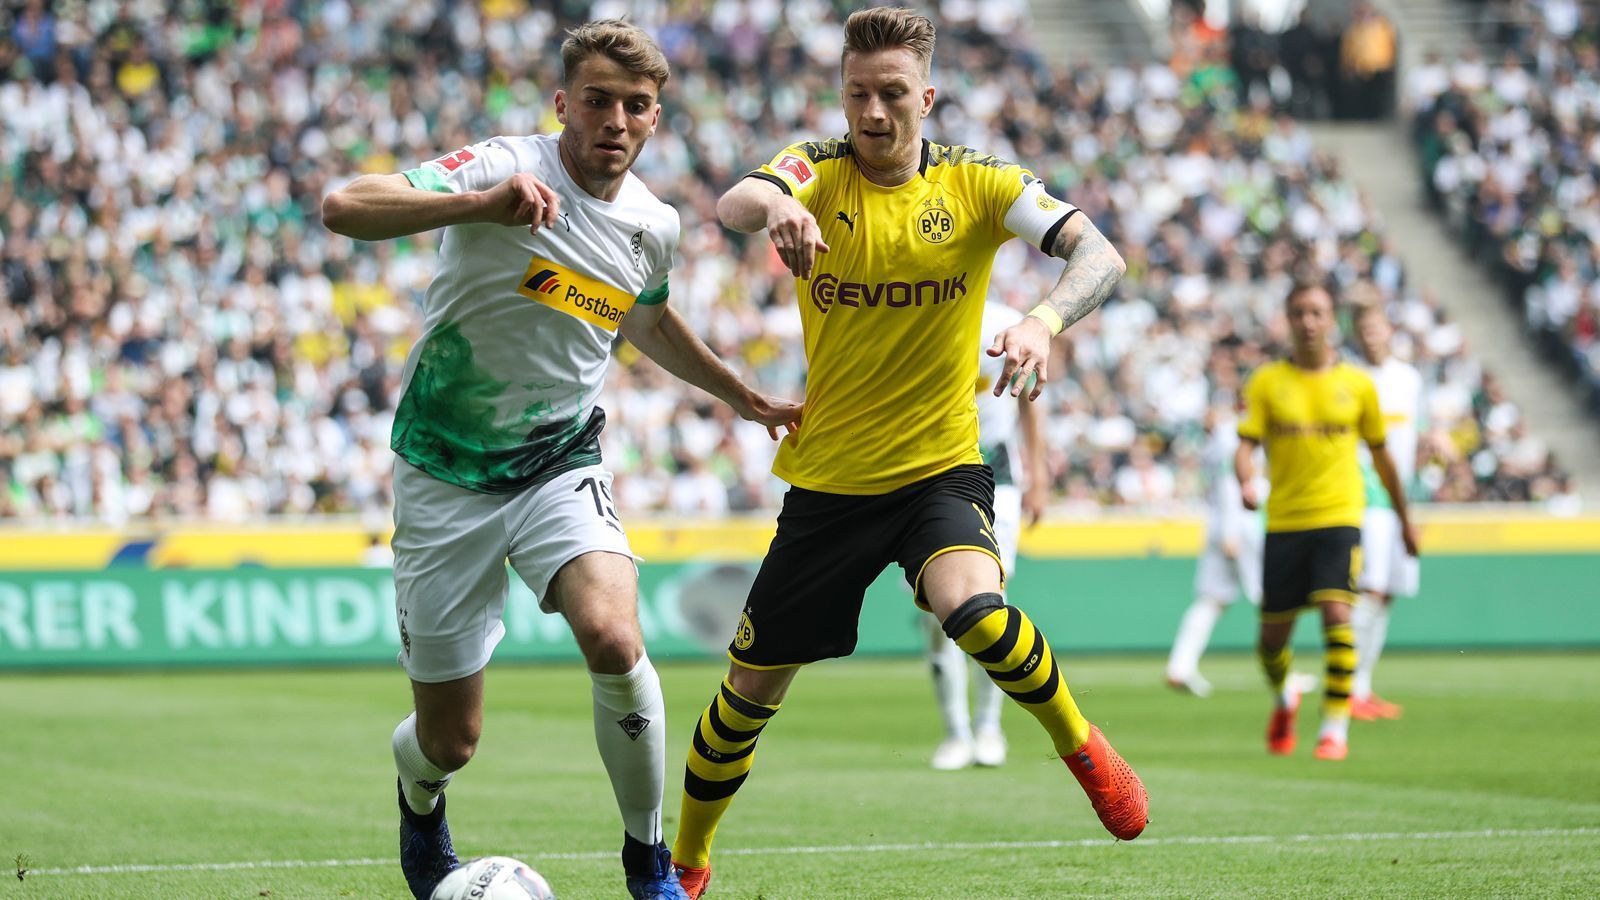 
                <strong>8. Spieltag</strong><br>
                Am 34. Spieltag der Saison 2018/19 gastierte Borussia Dortmund in Mönchengladbach und hoffte durch einen Sieg und Schützenhilfe noch auf den Meistertitel - letztlich vergebens. Am 8. Spieltag der Saison 2019/20 (18.-20. Oktober) treffen die beiden Borussias wieder aufeinander, dieses Mal allerdings in Dortmund - definitiv das Spitzenspiel dieses Spieltages.
              